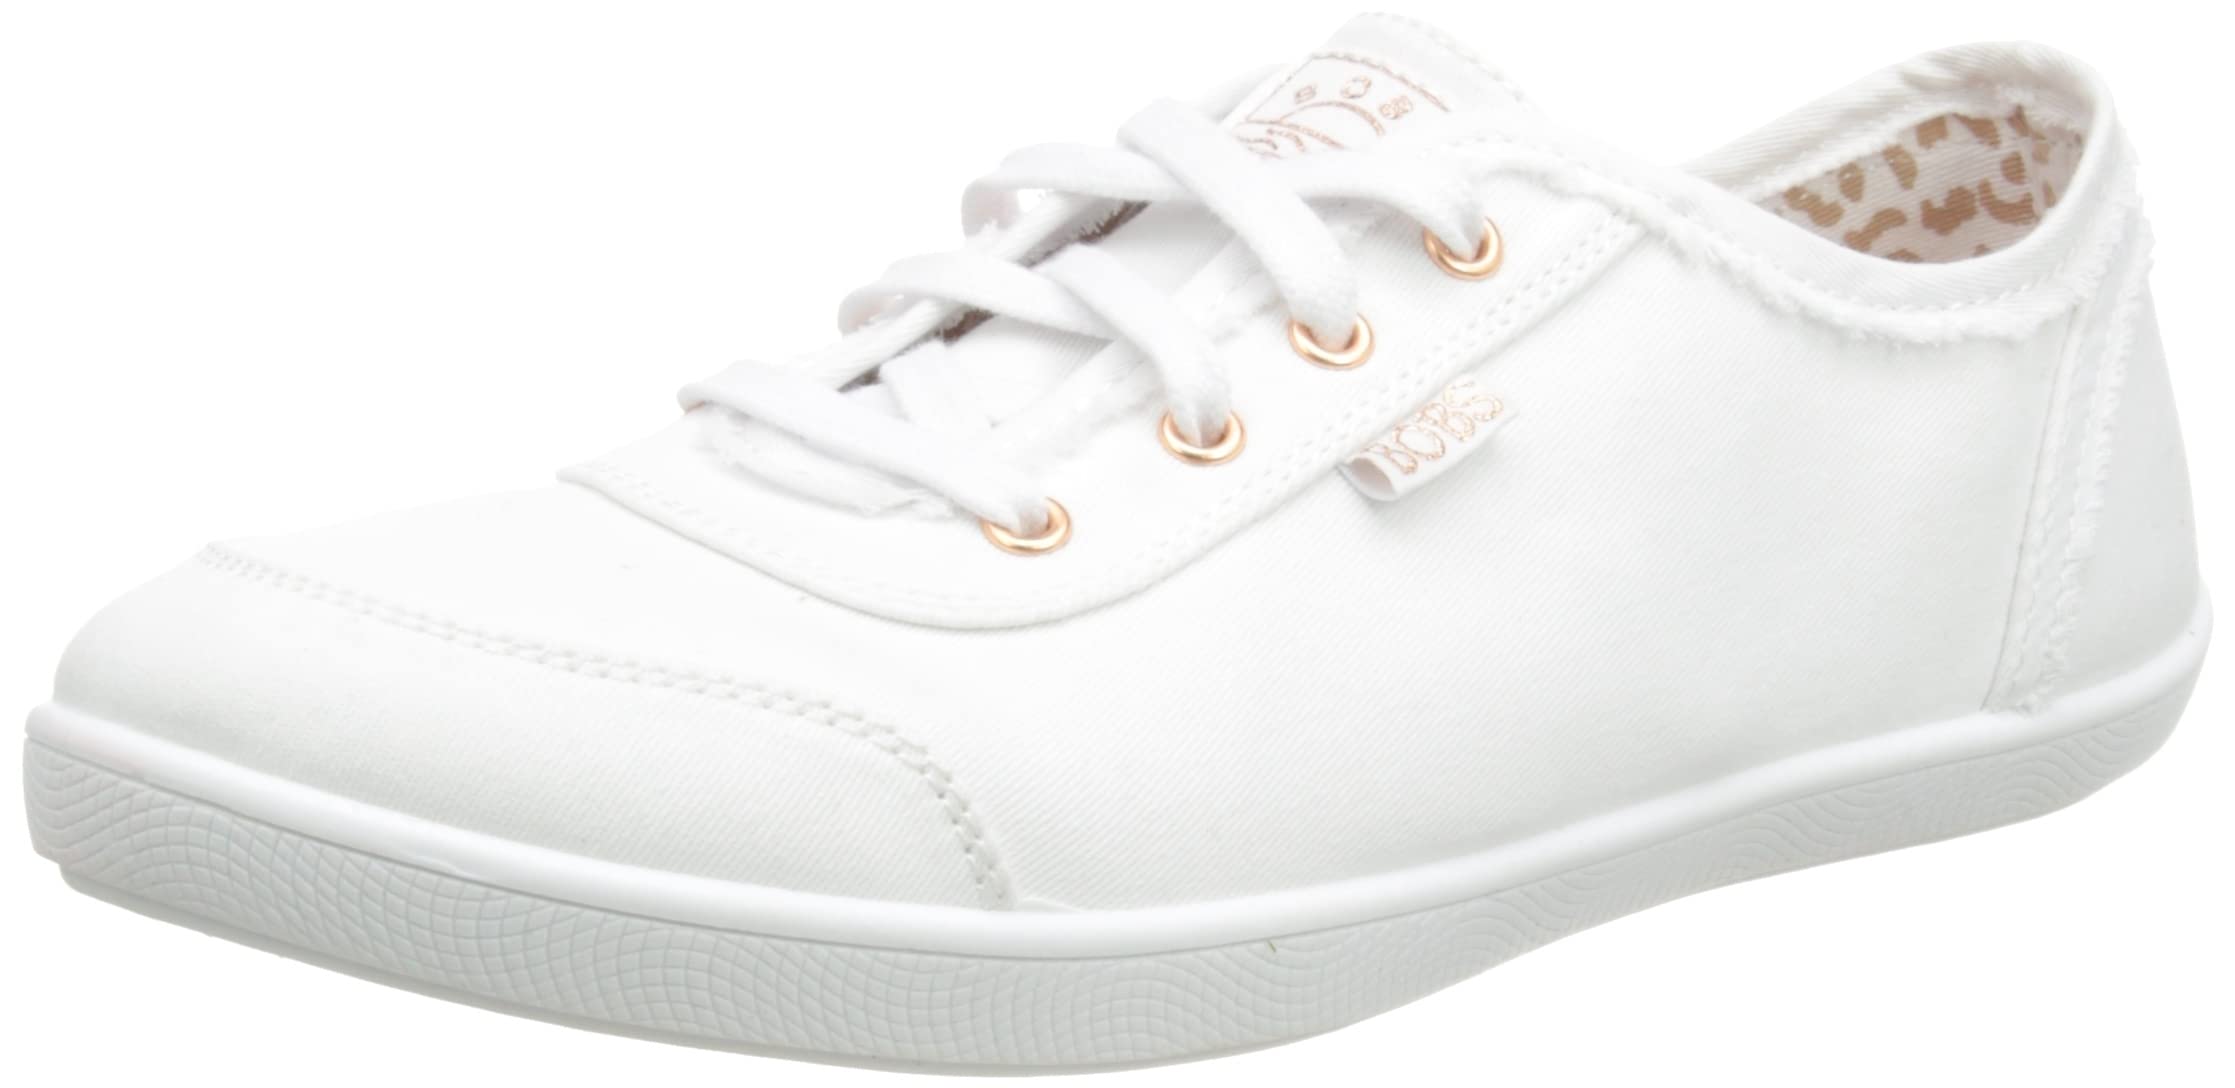 Skechers BOBS B Cute Slip-on Sneaker (Women's) - image 1 of 1